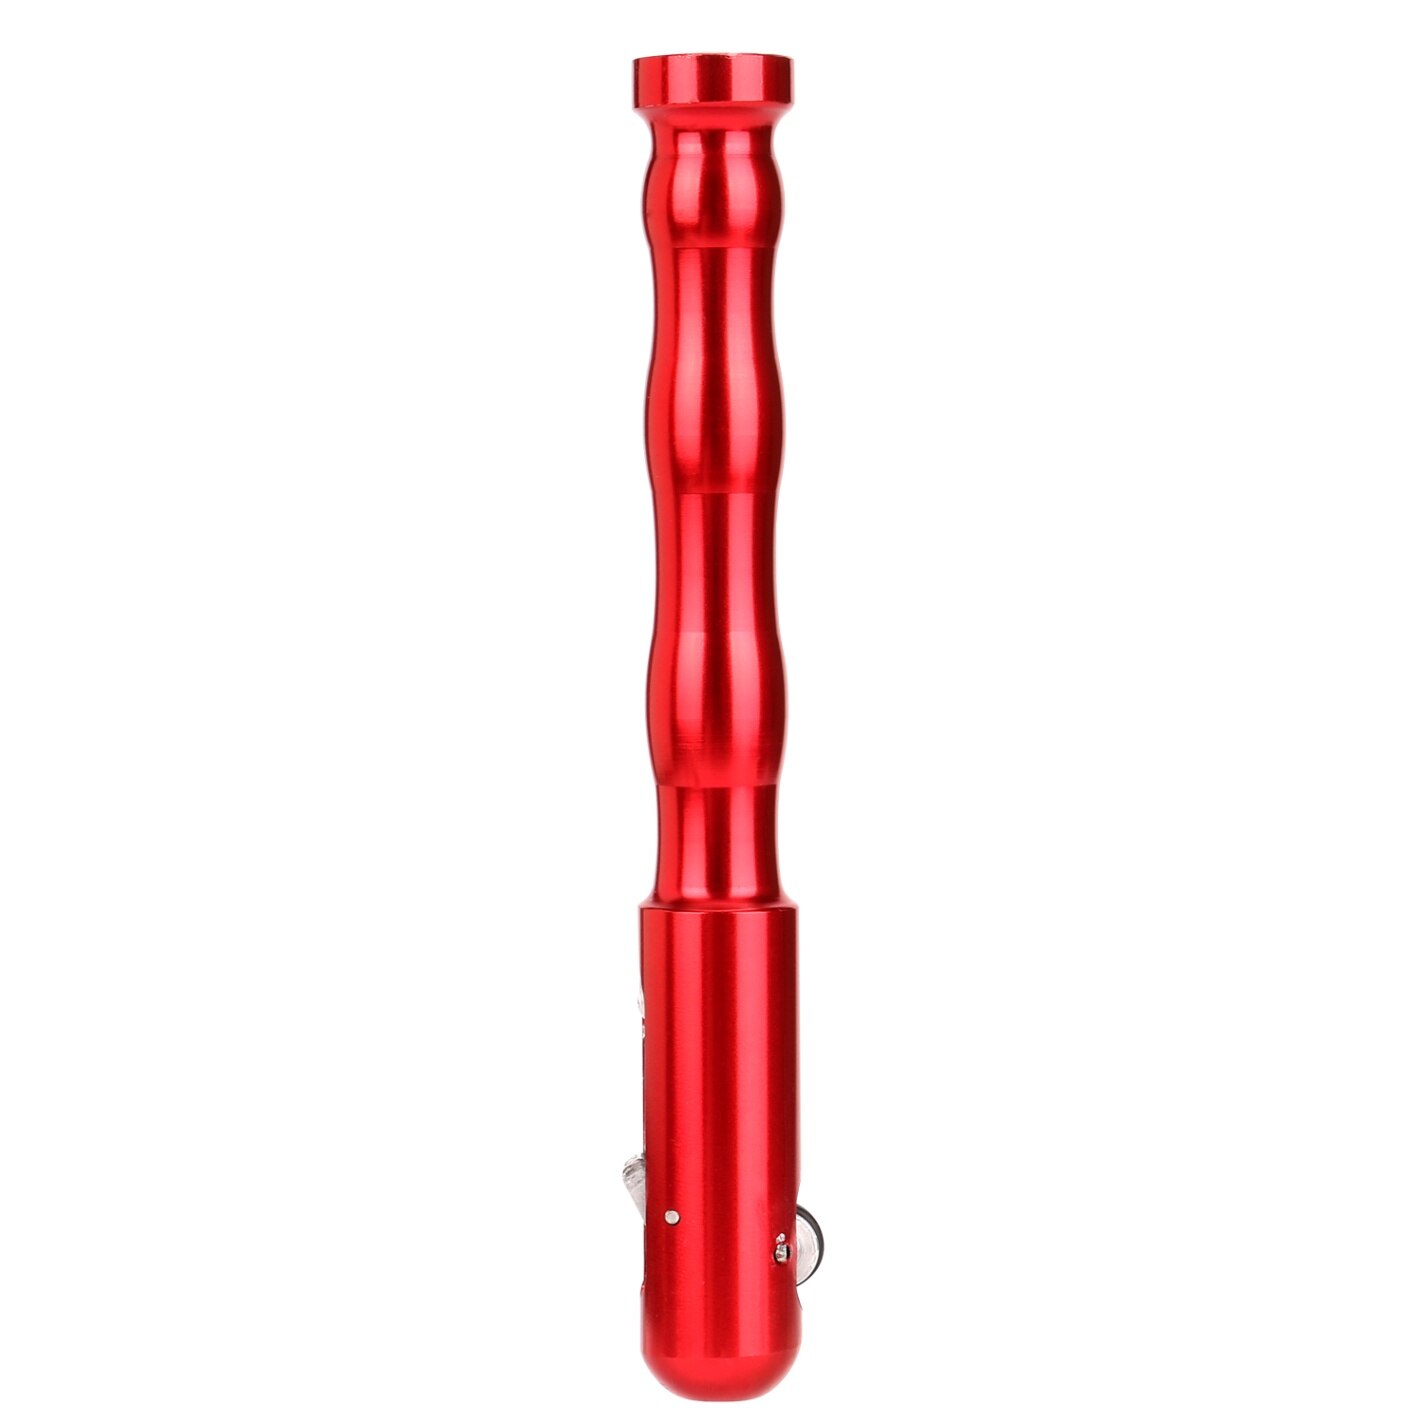 Svejsning tig pen finger feeder stangholder fyldtråd pen svejsning wirepencil tig svejsning til 1.0-3.2mm svejsetråd: Rød